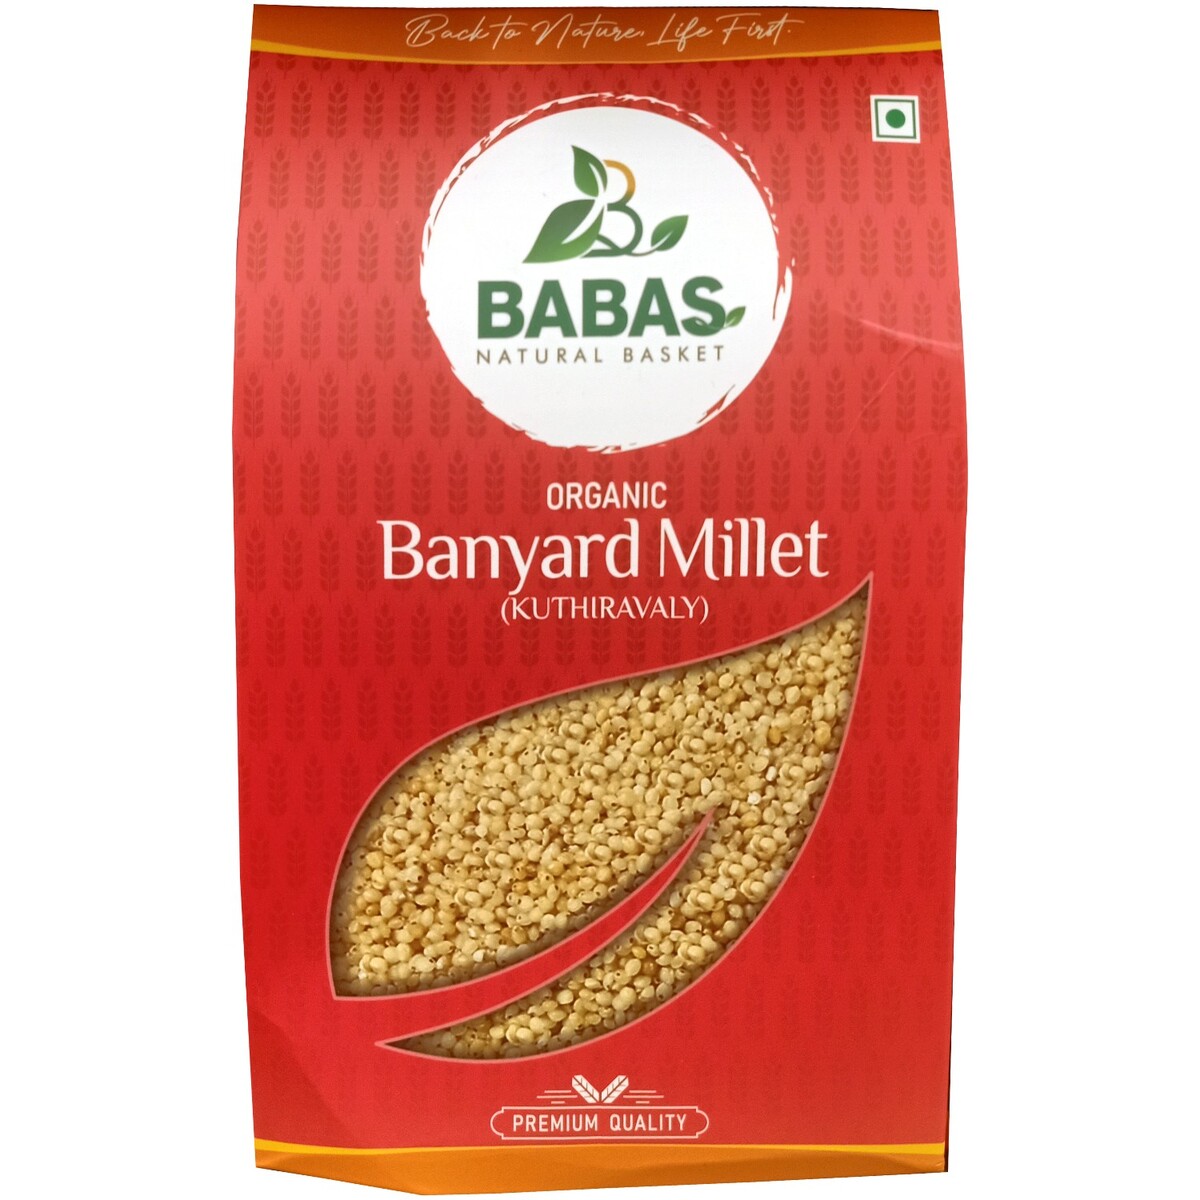 Babas Banyard Millet 500g